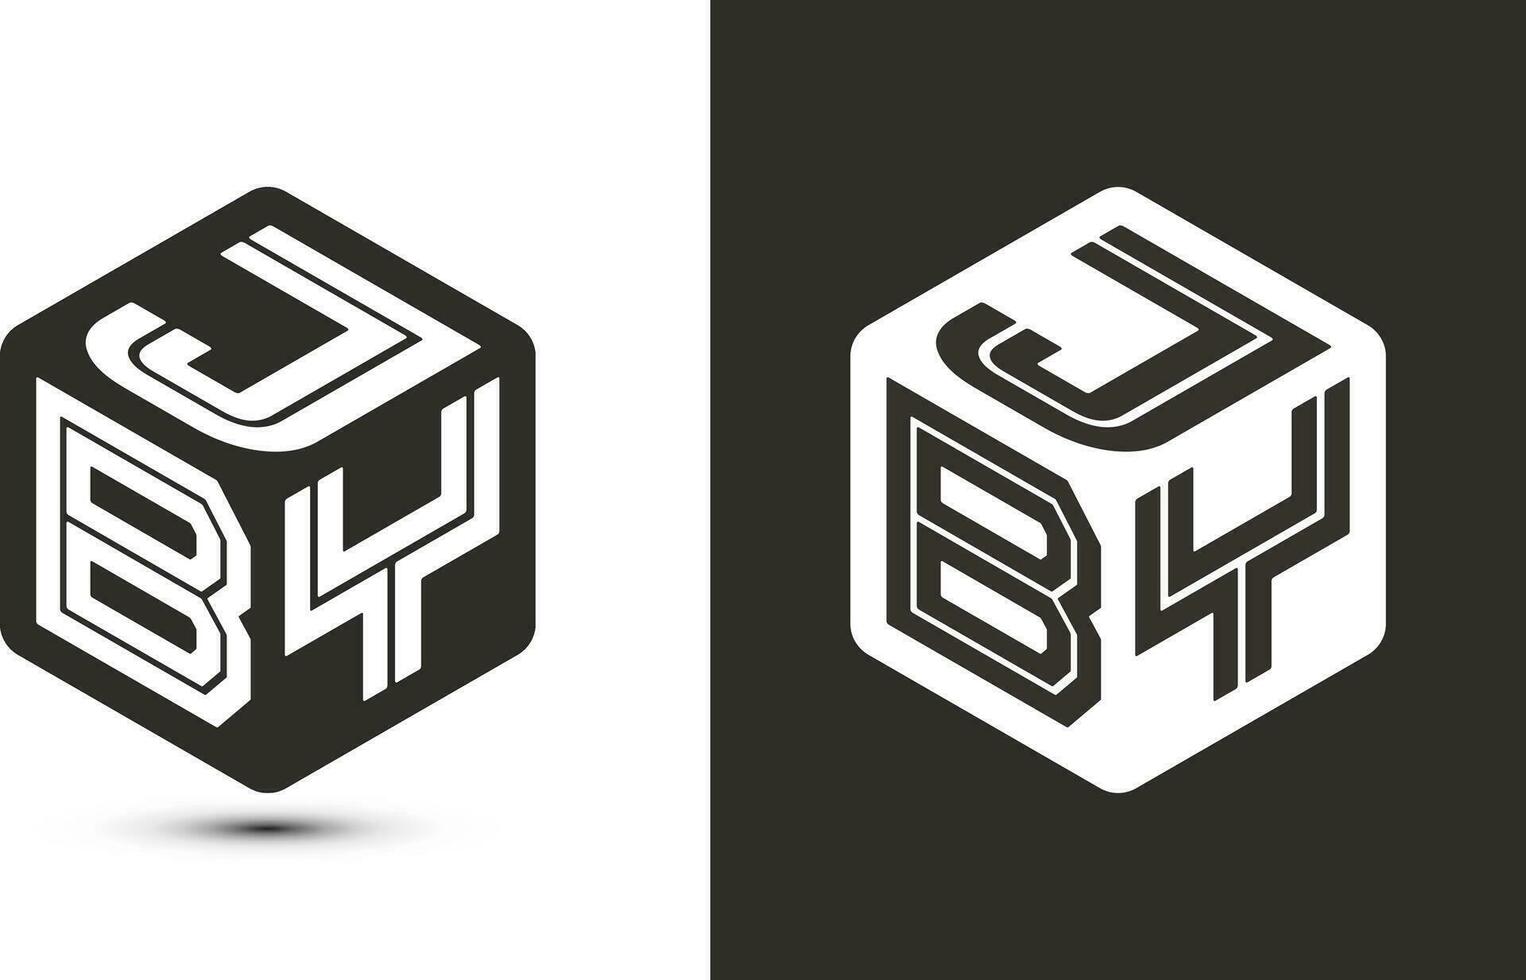 jby brief logo ontwerp met illustrator kubus logo, vector logo modern alfabet doopvont overlappen stijl.